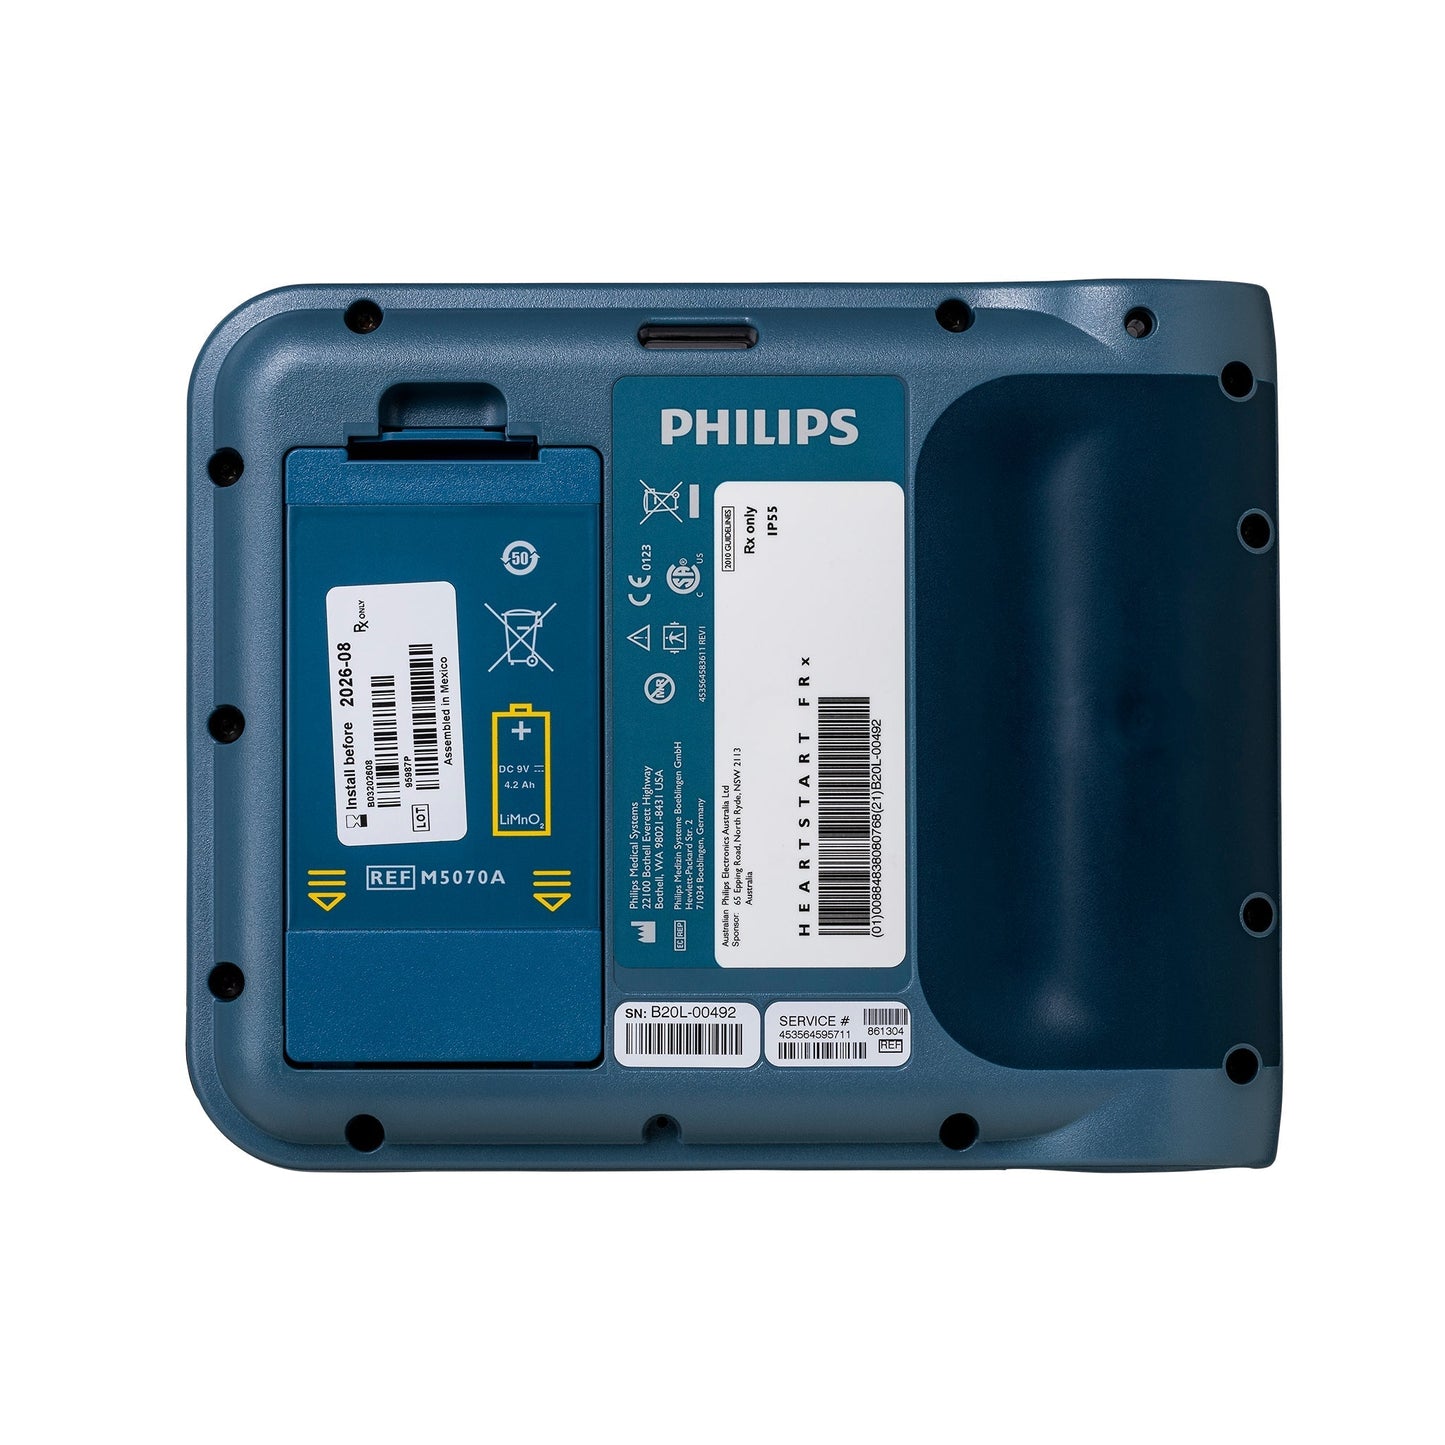 Philips Heartstart – FRx AED Komplettpaket mit Aivia 200 Außenbox